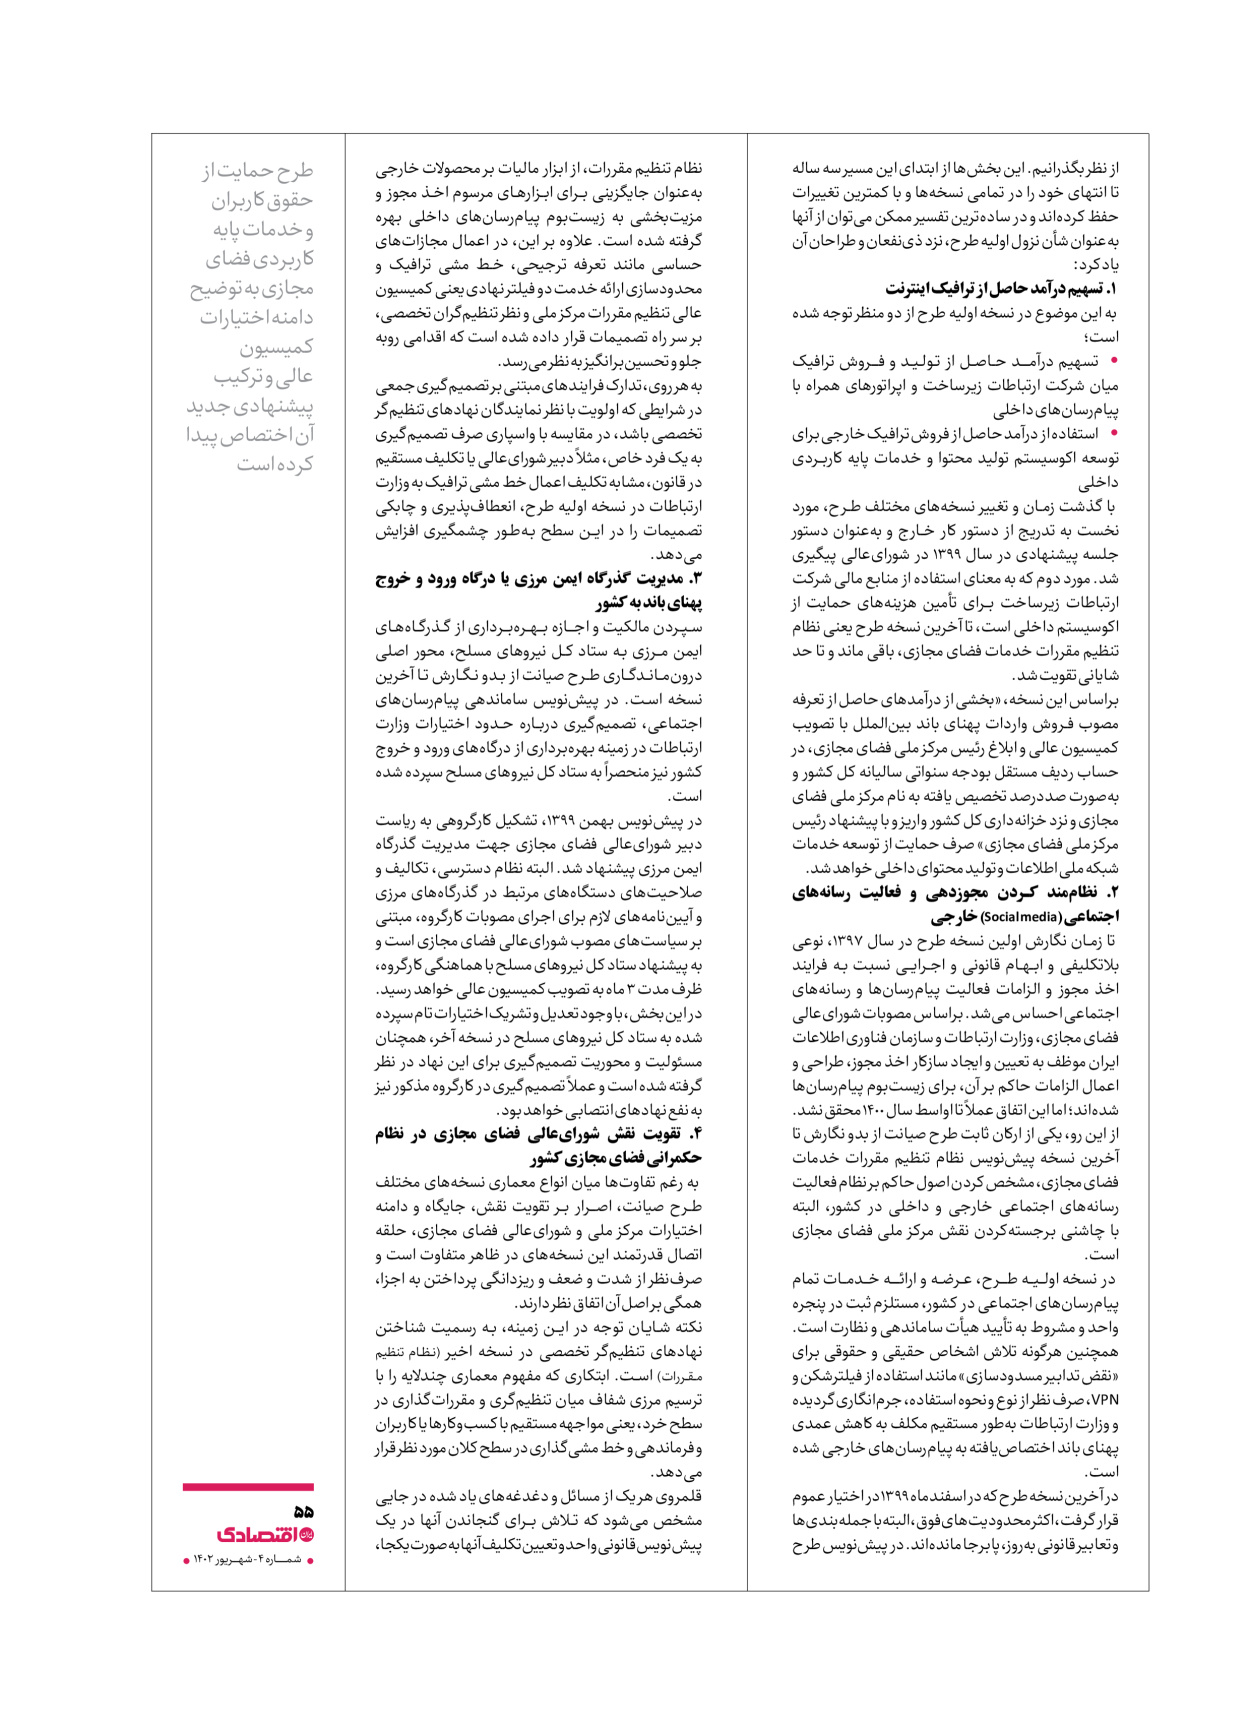 روزنامه ایران اقتصادی - ویژه نامه اقتصادی۴ - ۰۴ شهریور ۱۴۰۲ - صفحه ۵۵